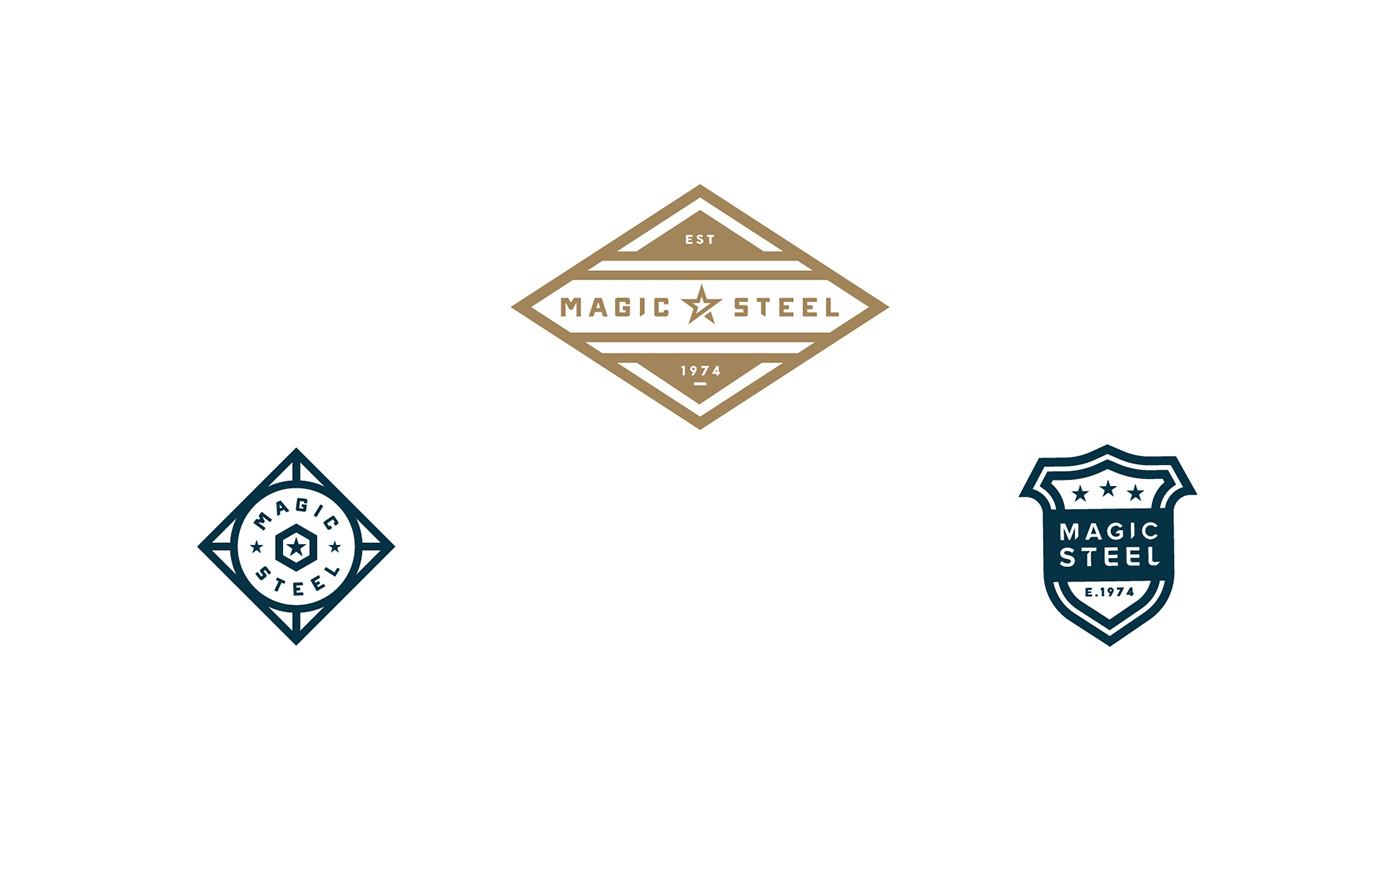 logo Icon emblem mark wordmark branding  badge identity Logo Design iconography